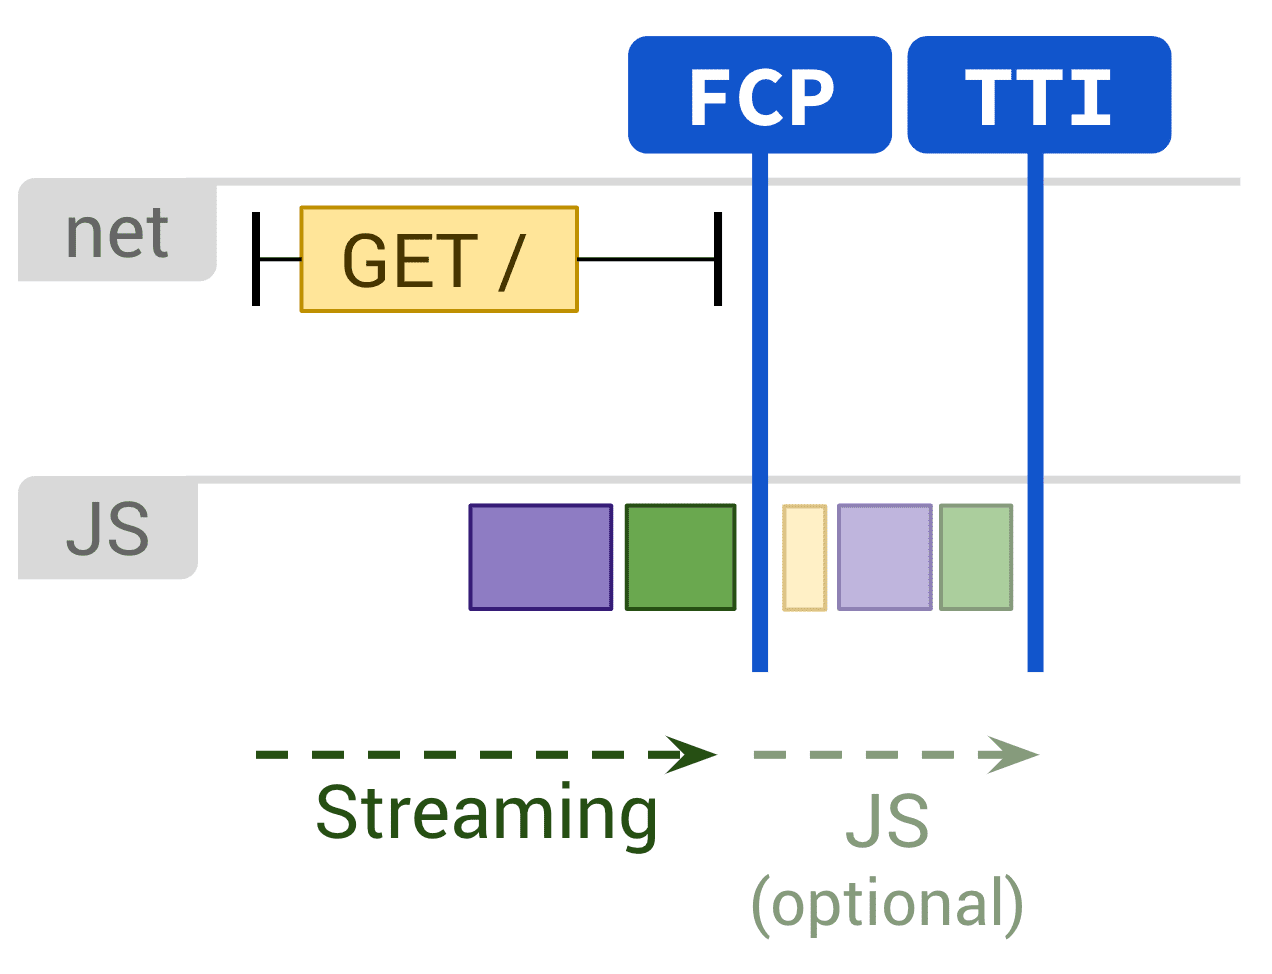 显示影响 FCP 和 TTI 的静态渲染和可选 JS 执行的示意图。